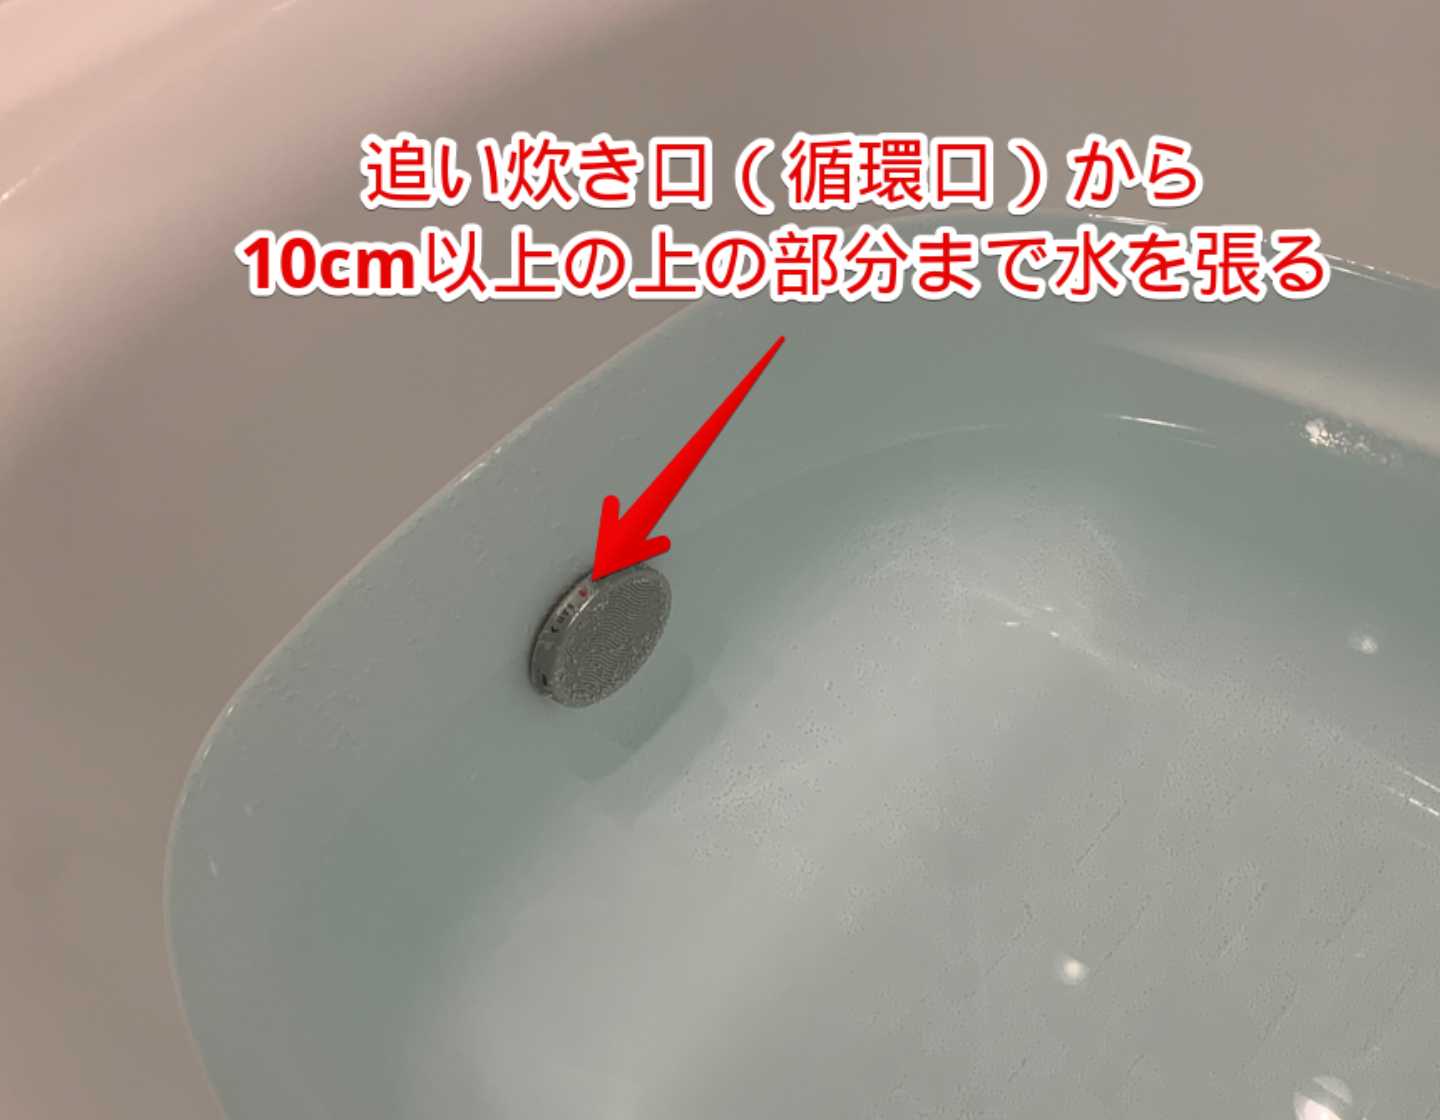 エコキュートの凍結防止方法① 浴槽に水をはって凍結防止運転する